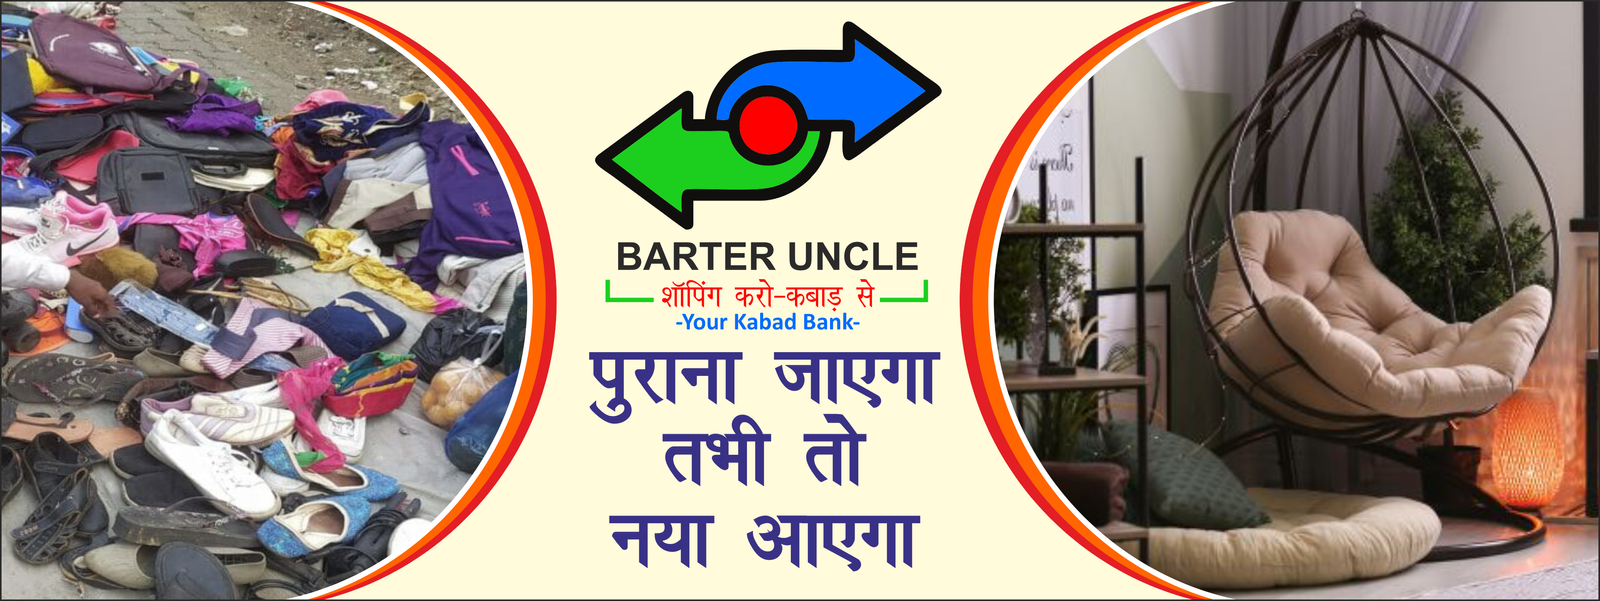 Barter Uncle Website Poster cdr 04